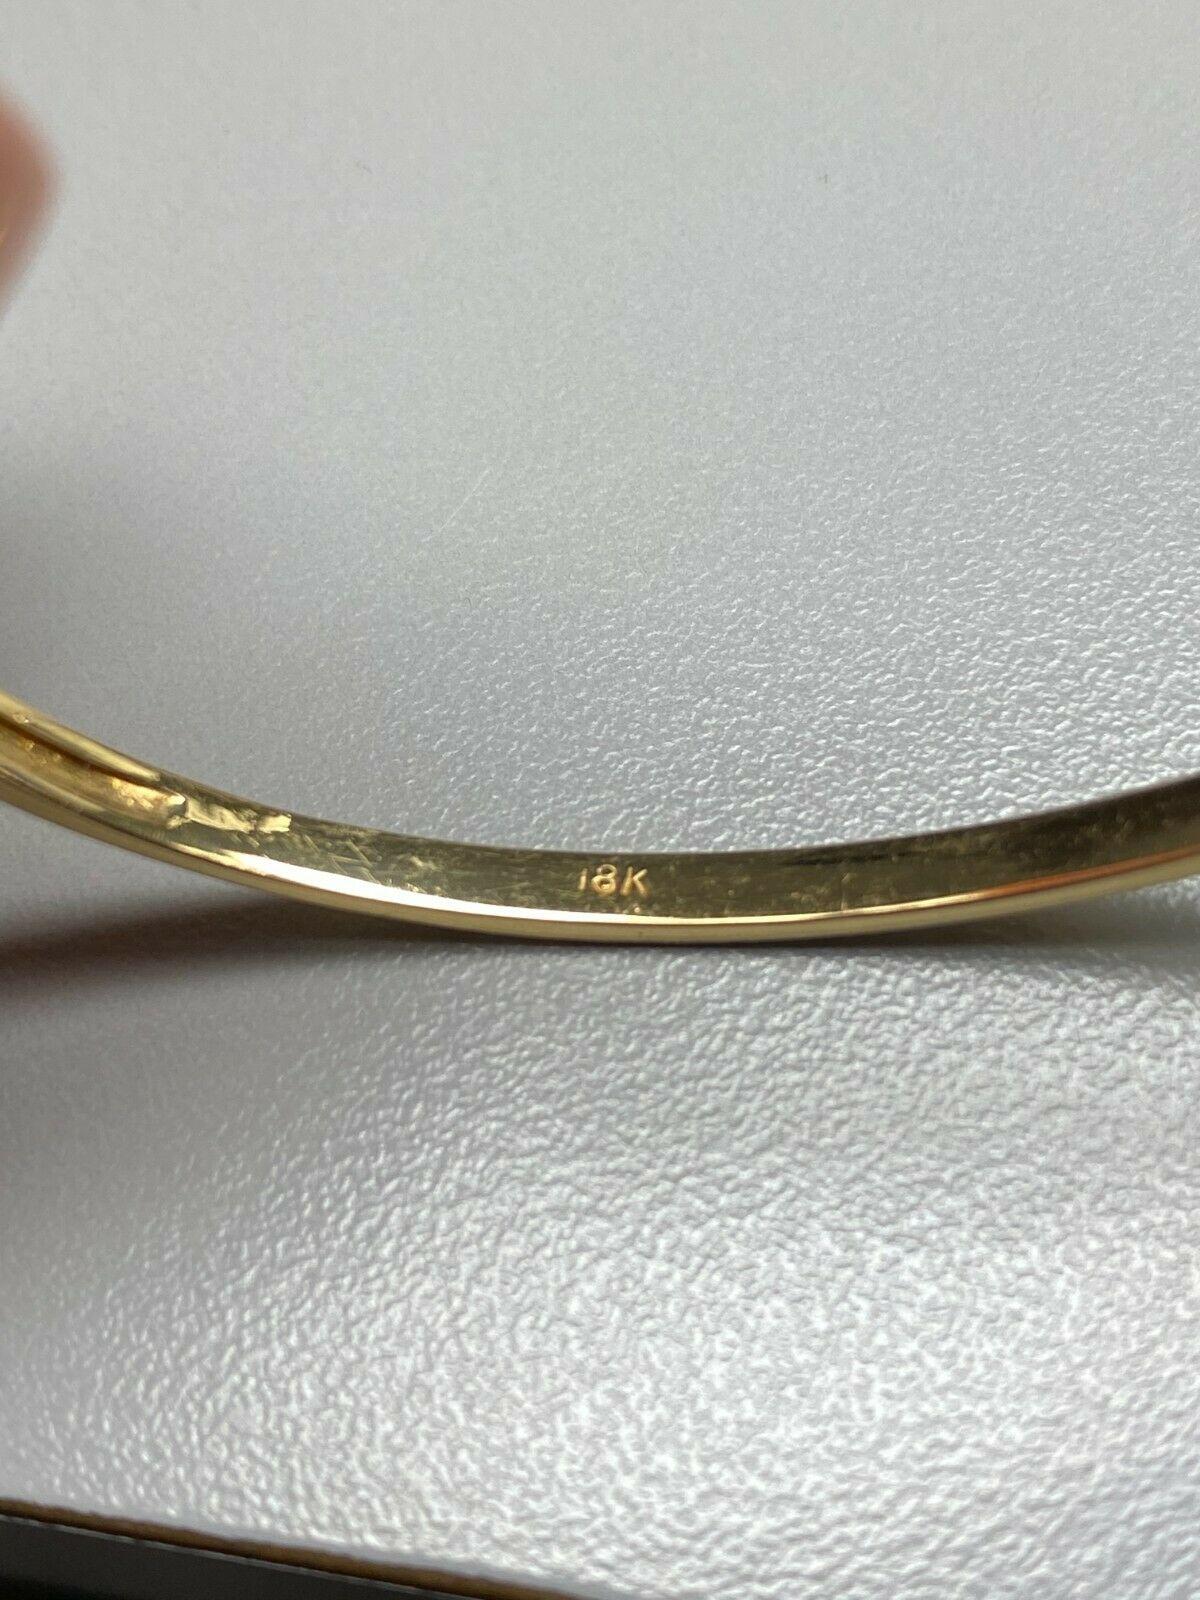 gold bypass bracelet